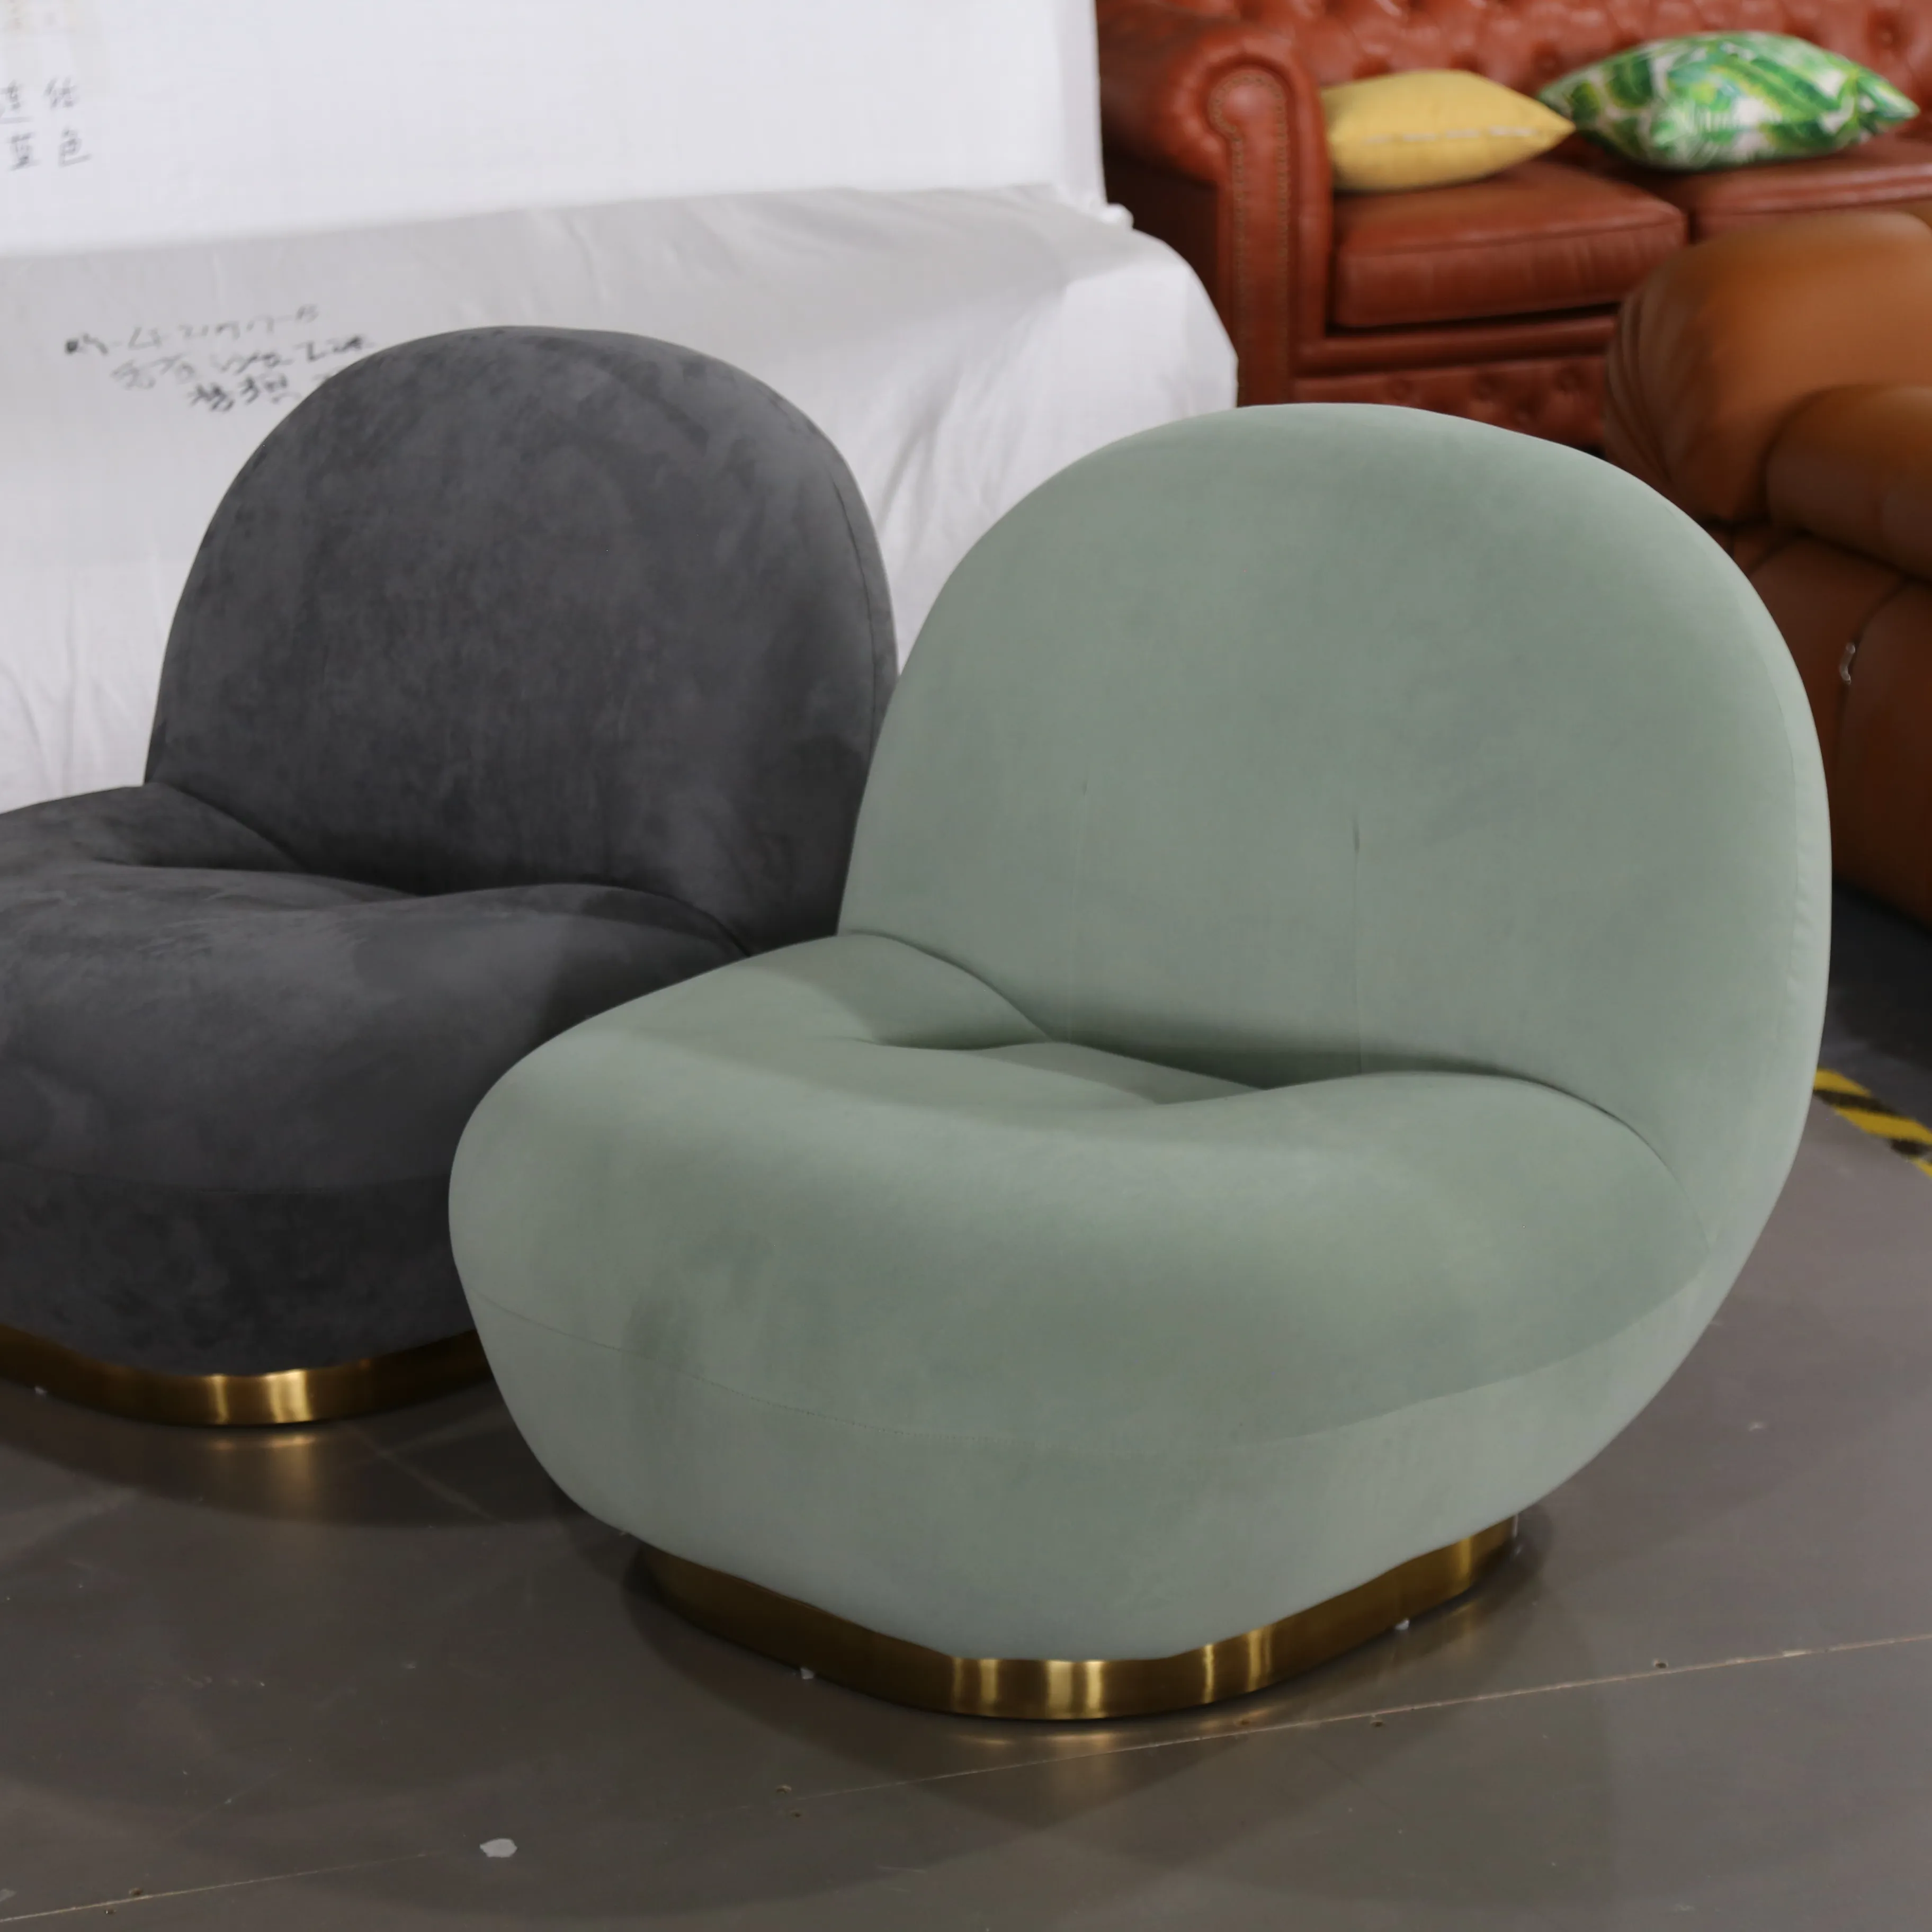 المعاصرة تصميم الضأن الصوف بوكل أريكة صالة شمواه منحنى الزاوية المخملية صغيرة أريكة استرخاء